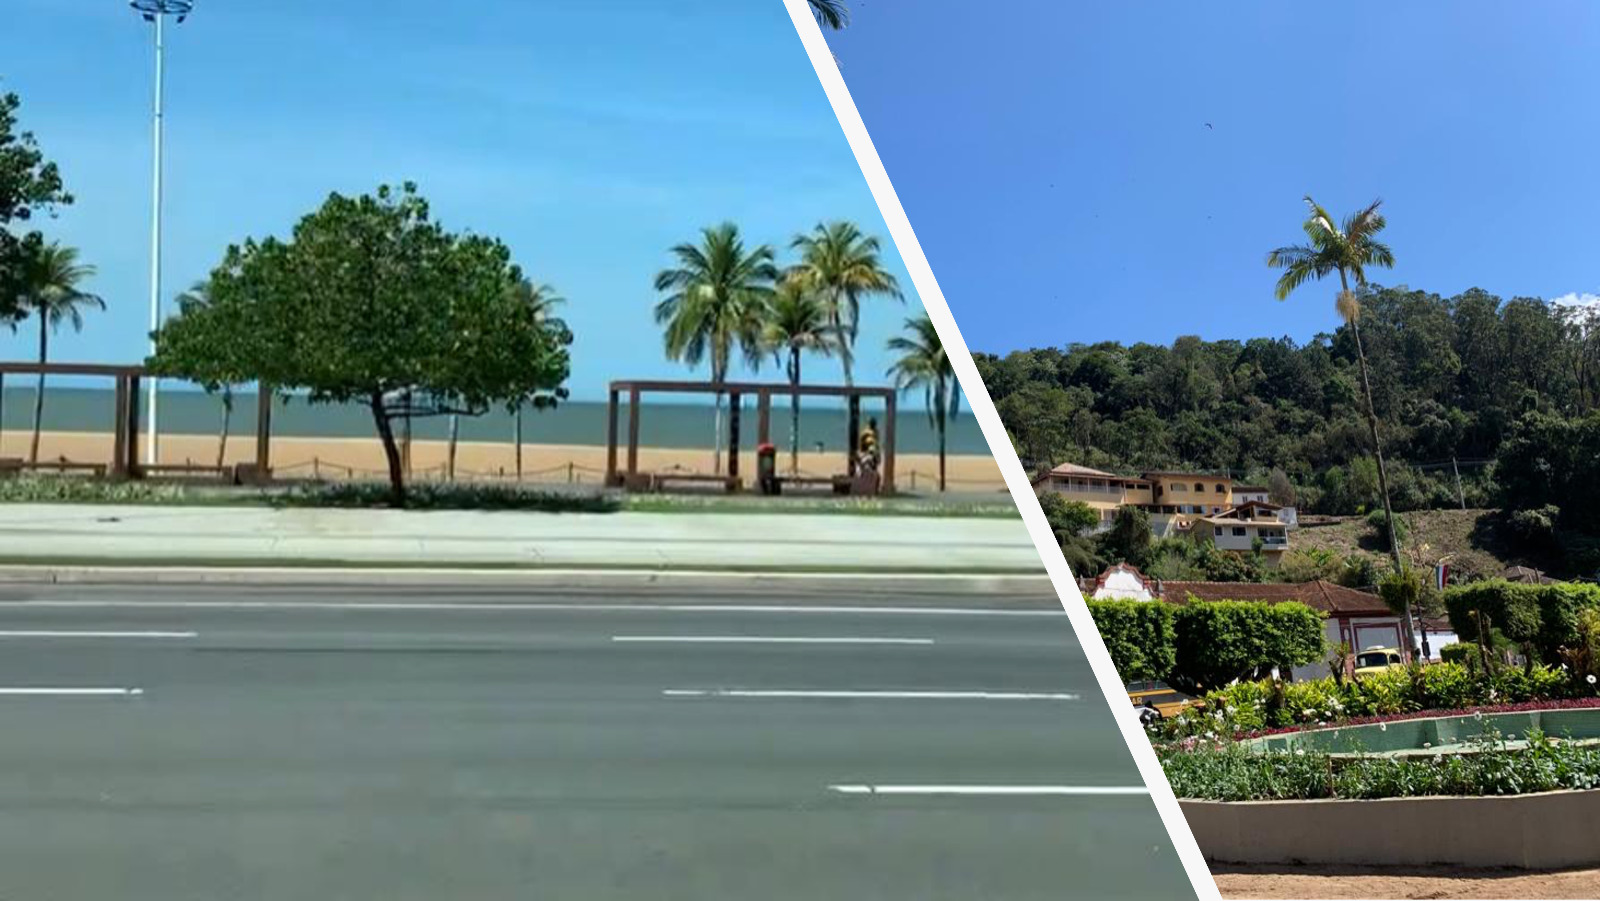 Foto dividida em duas partes. À esquerda um dia ensolarado mostra o calçadão da praia e o mar. No primeiro plano vê-se o asfalto. Na segunda foto, árvores e casas na região de serra.